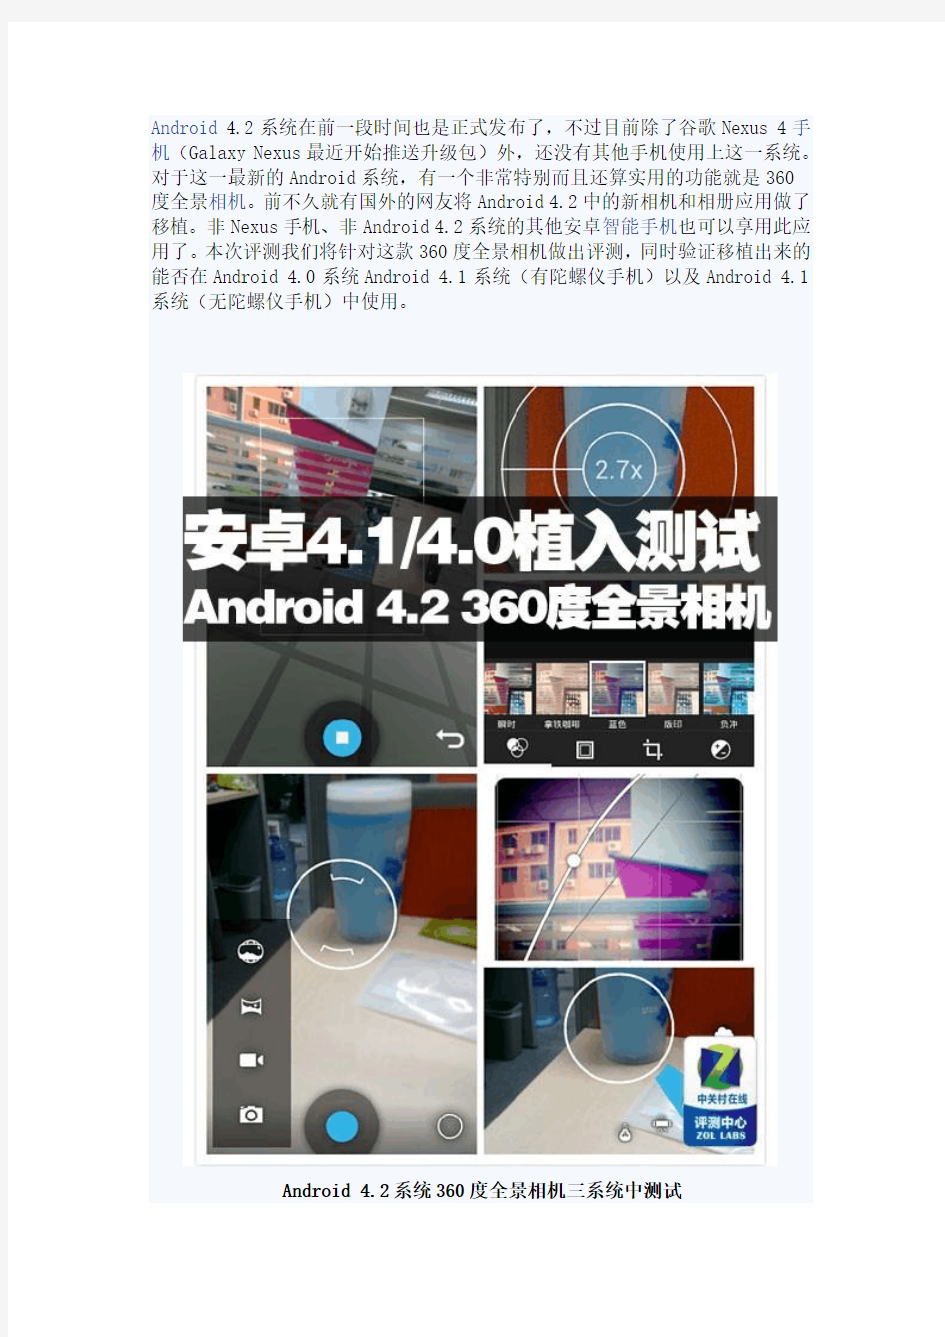 三系统测试Android 4.2新版360度全景相机